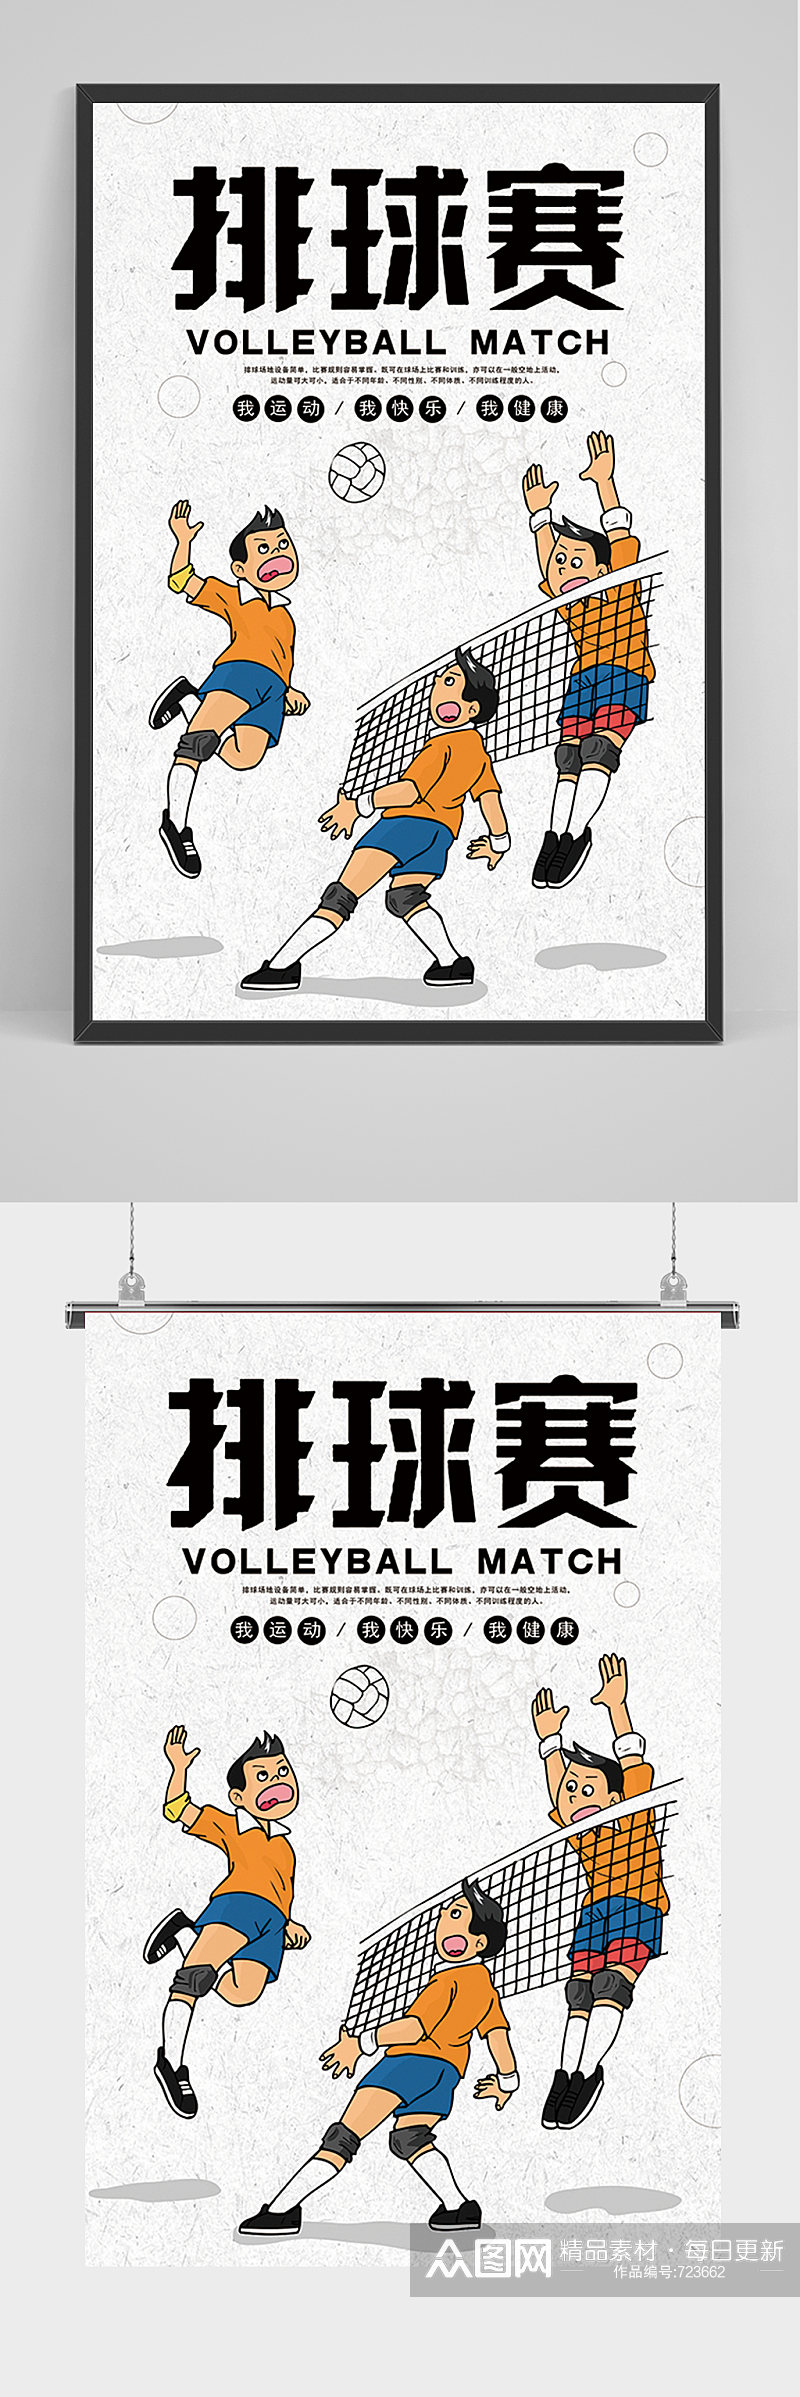 简约卡通排球赛海报素材